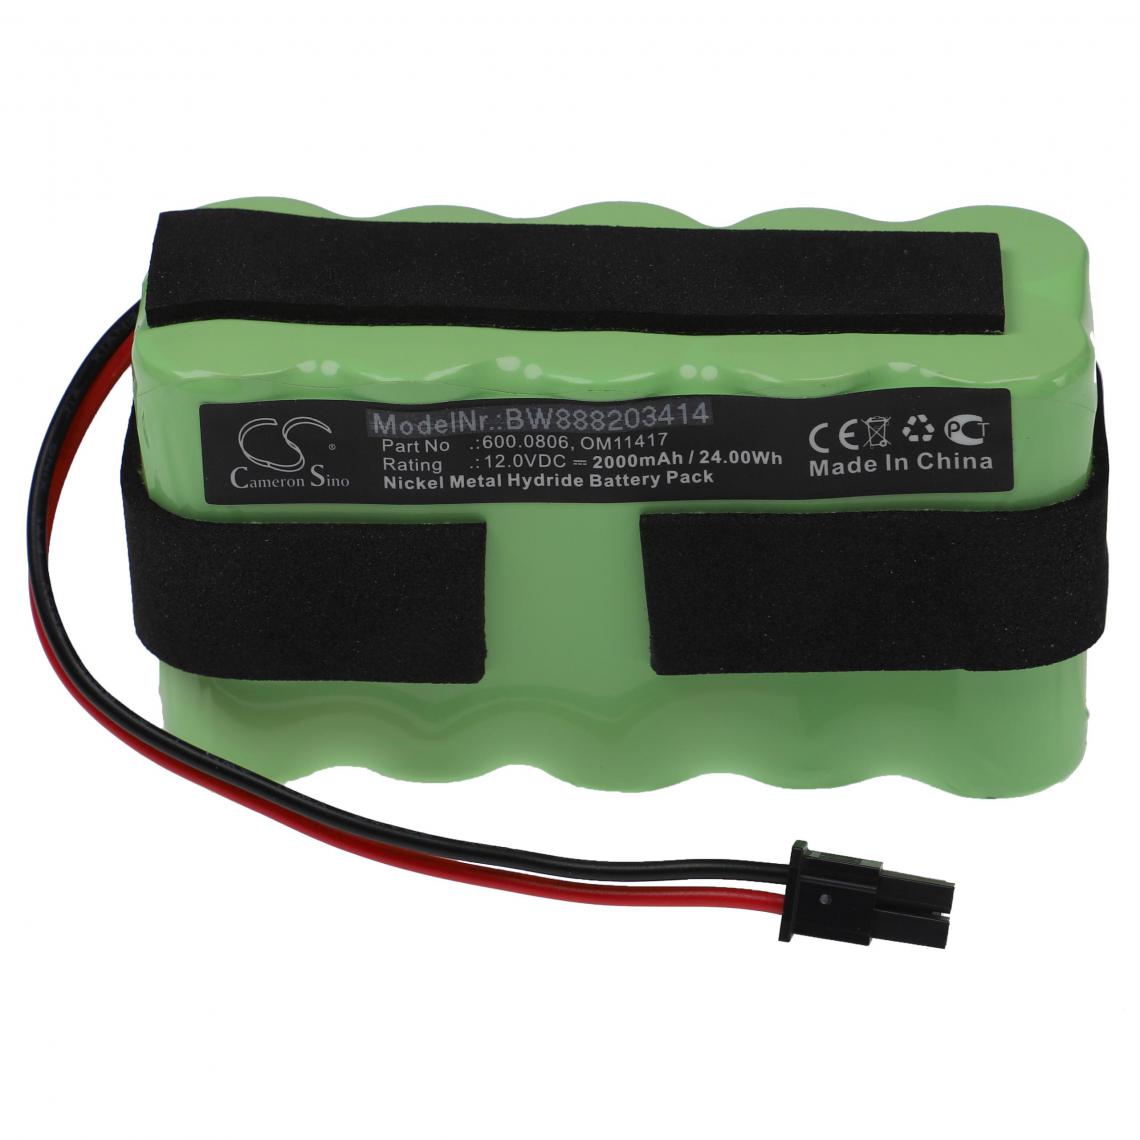 Vhbw - vhbw Batterie compatible avec Medela Clario appareil médical (2000mAh, 12V, NiMH) - Piles spécifiques